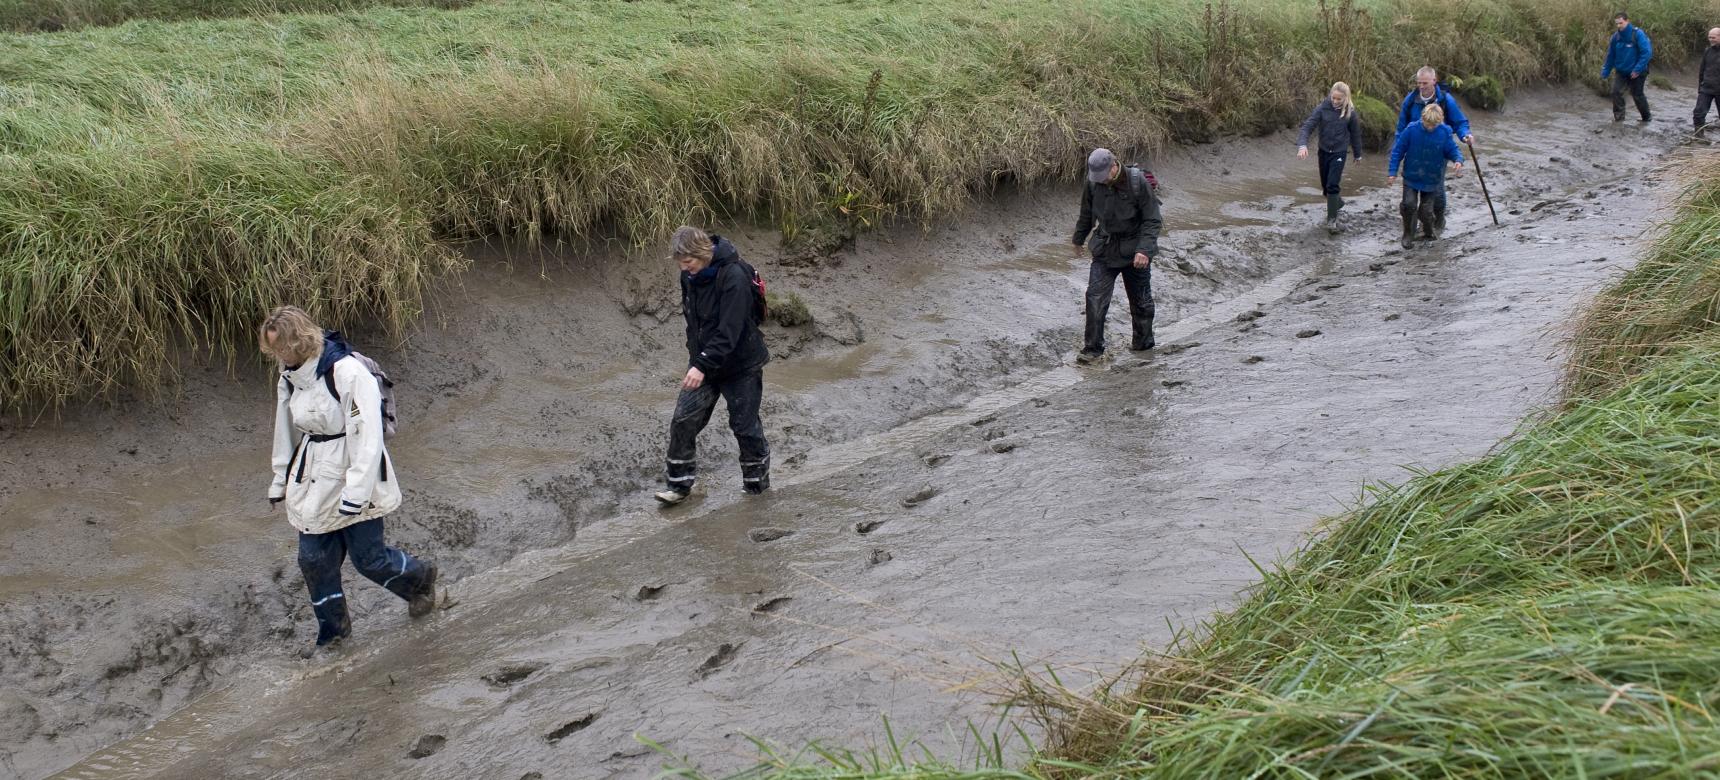 Bezoekers in de modder tijdens een excursie in het Verdronken Land van Saeftinghe